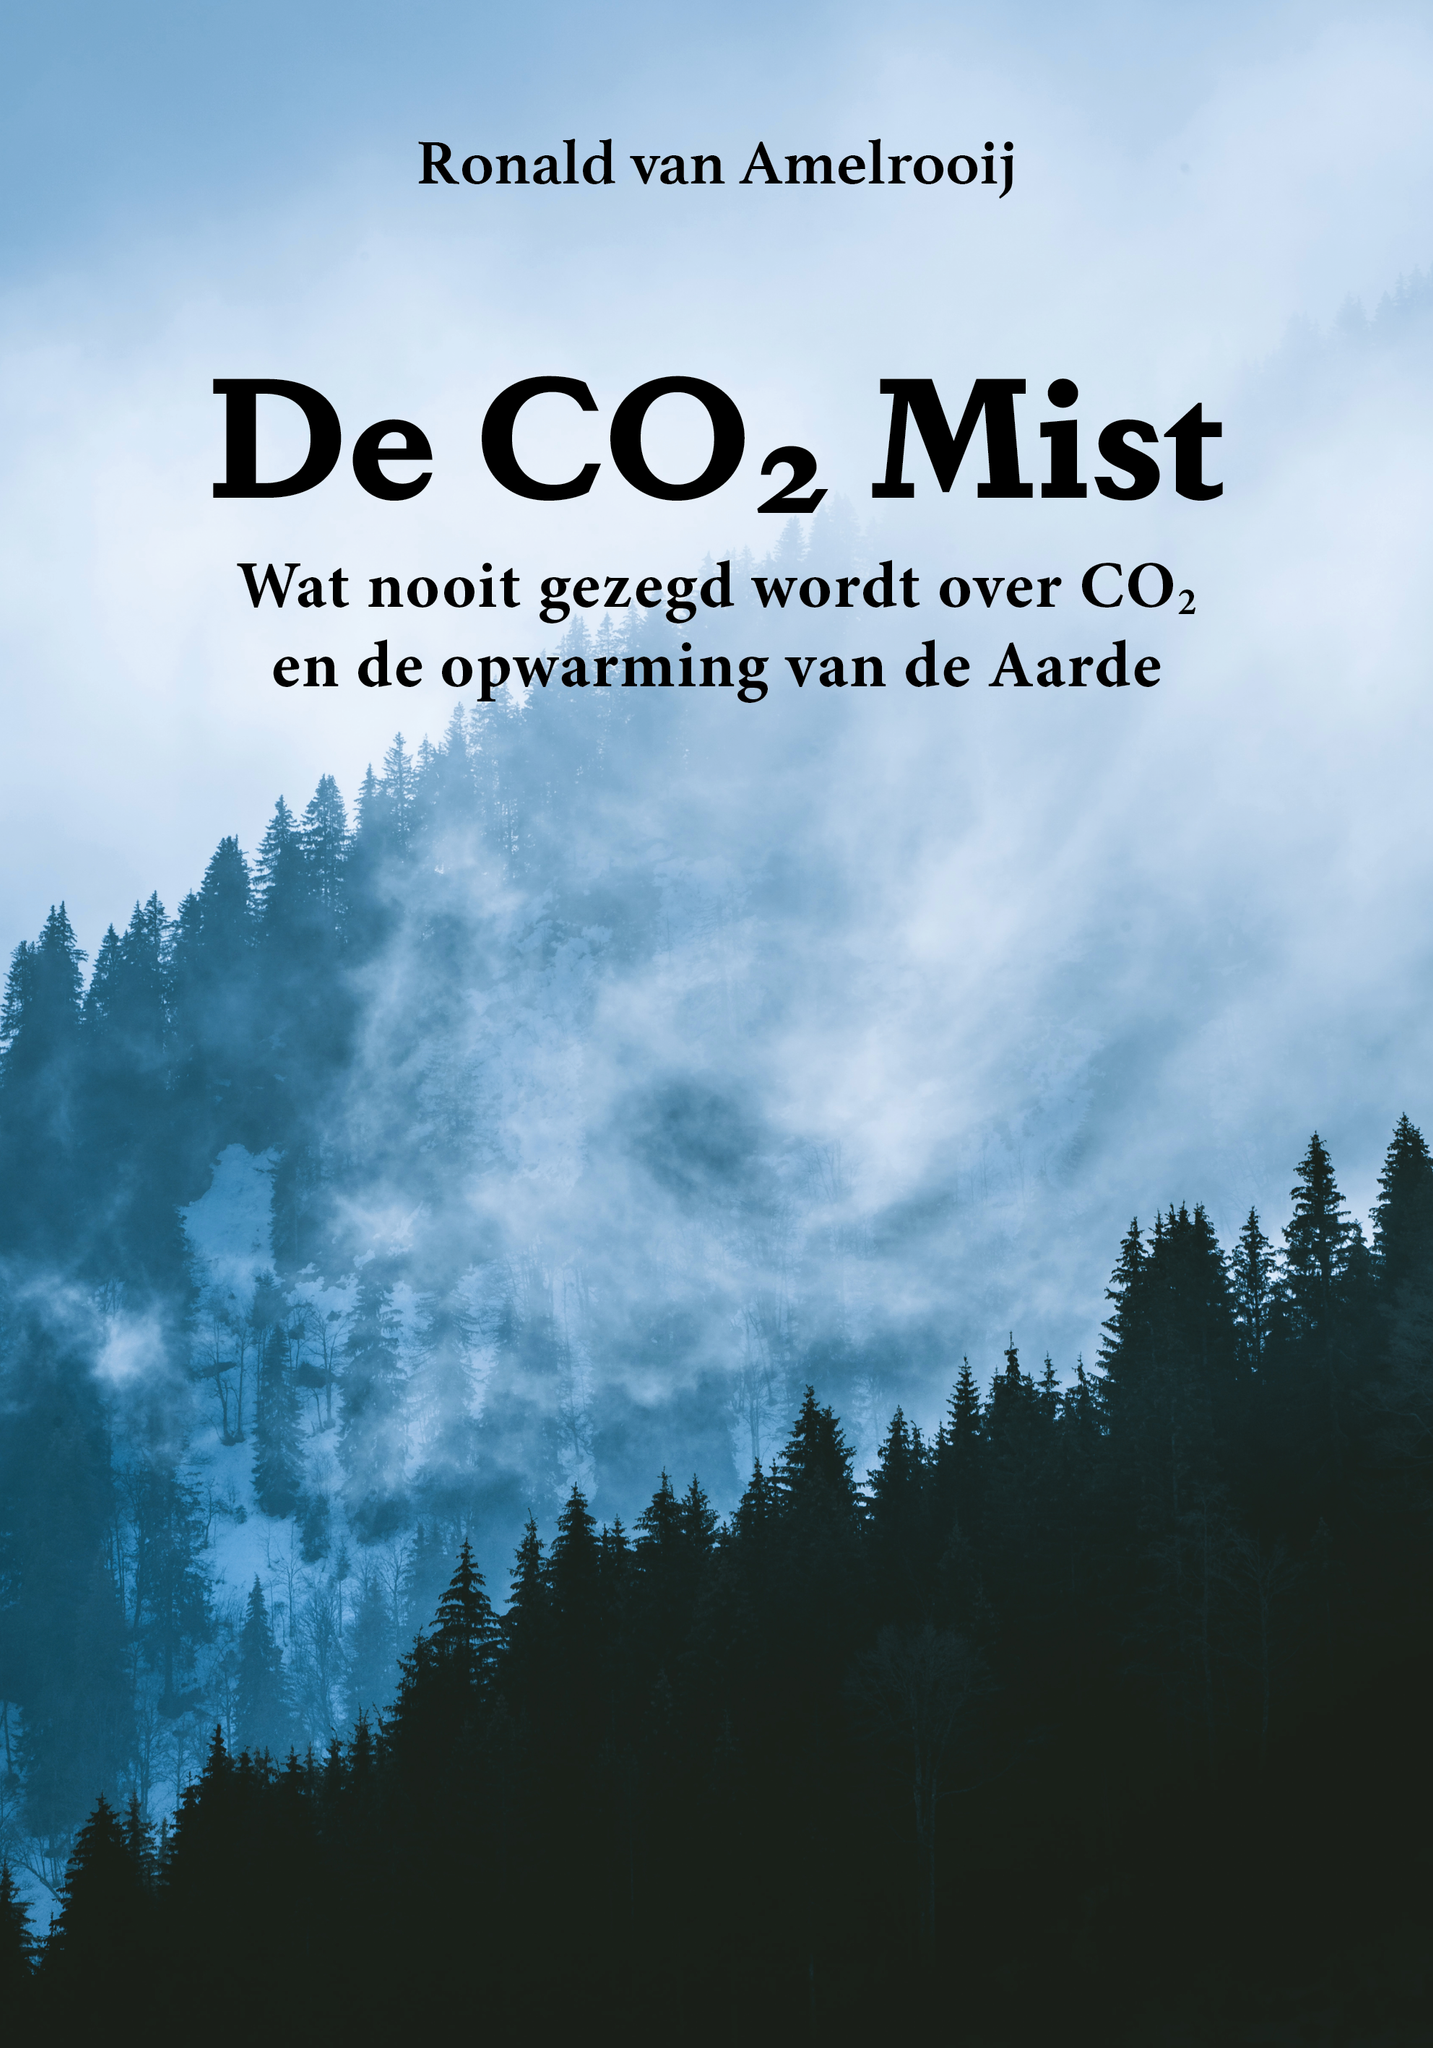 Ronald van Amelrooij - De CO2 Mist